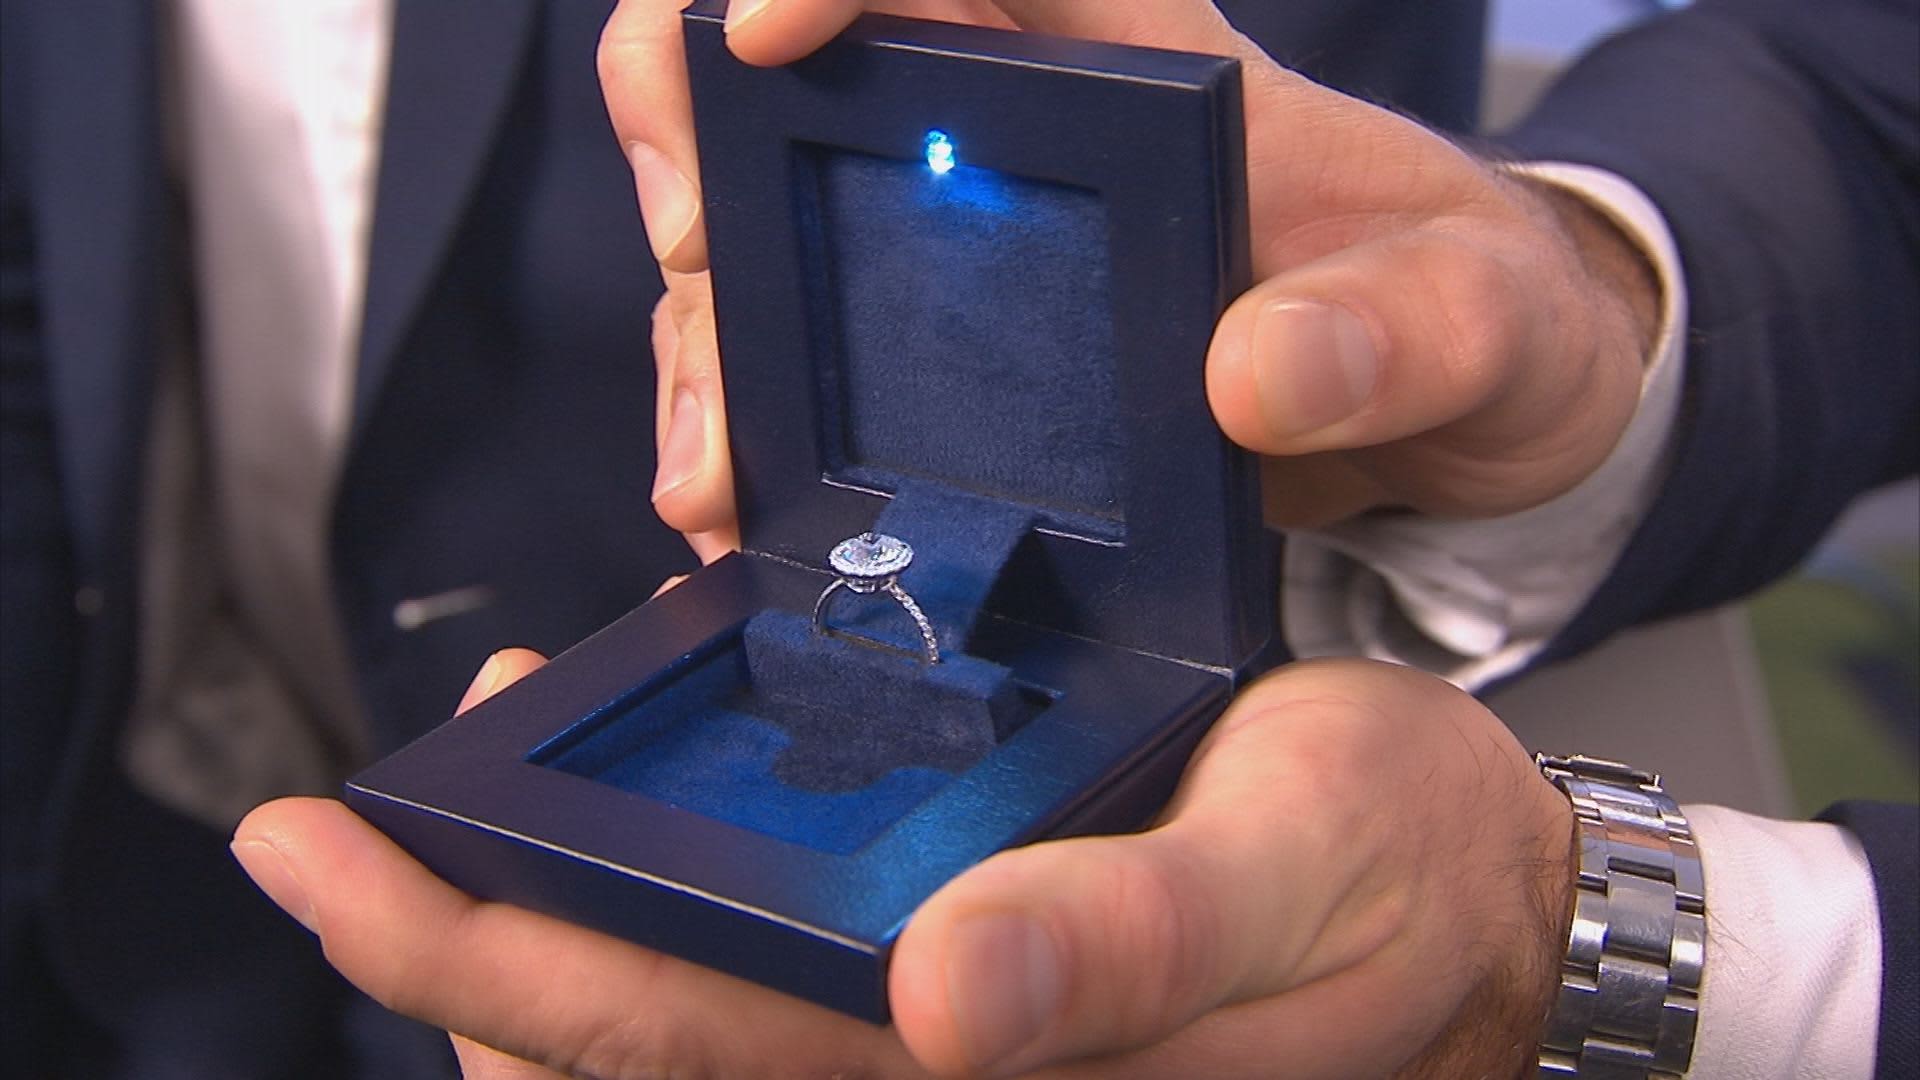 illuminated engagement ring box